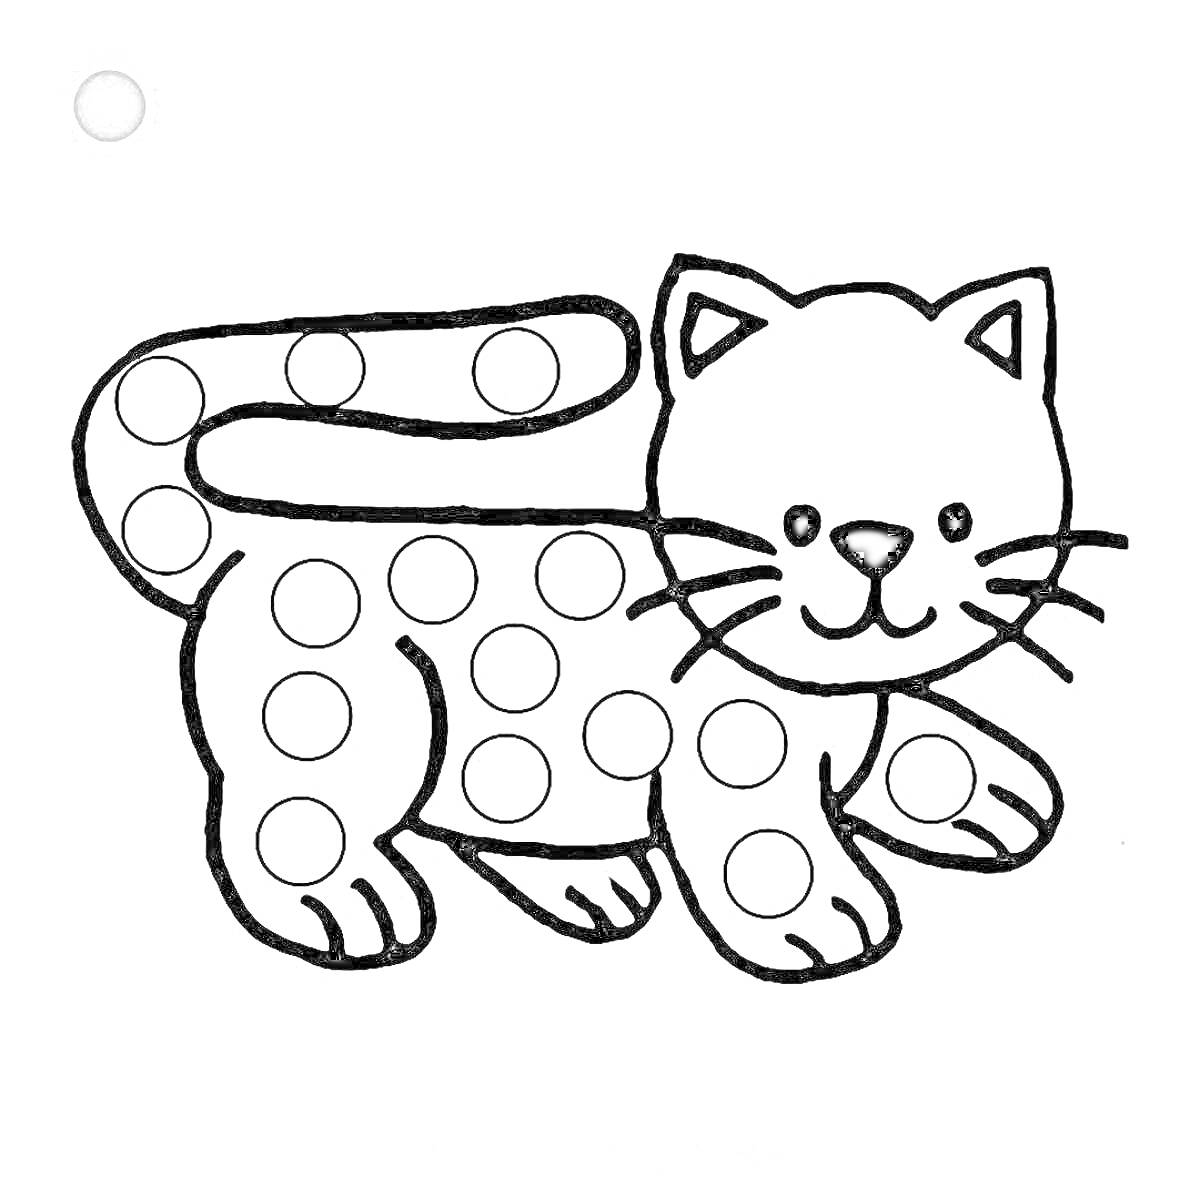 Раскраска Кот с пятнами (для раскрашивания пластилином)